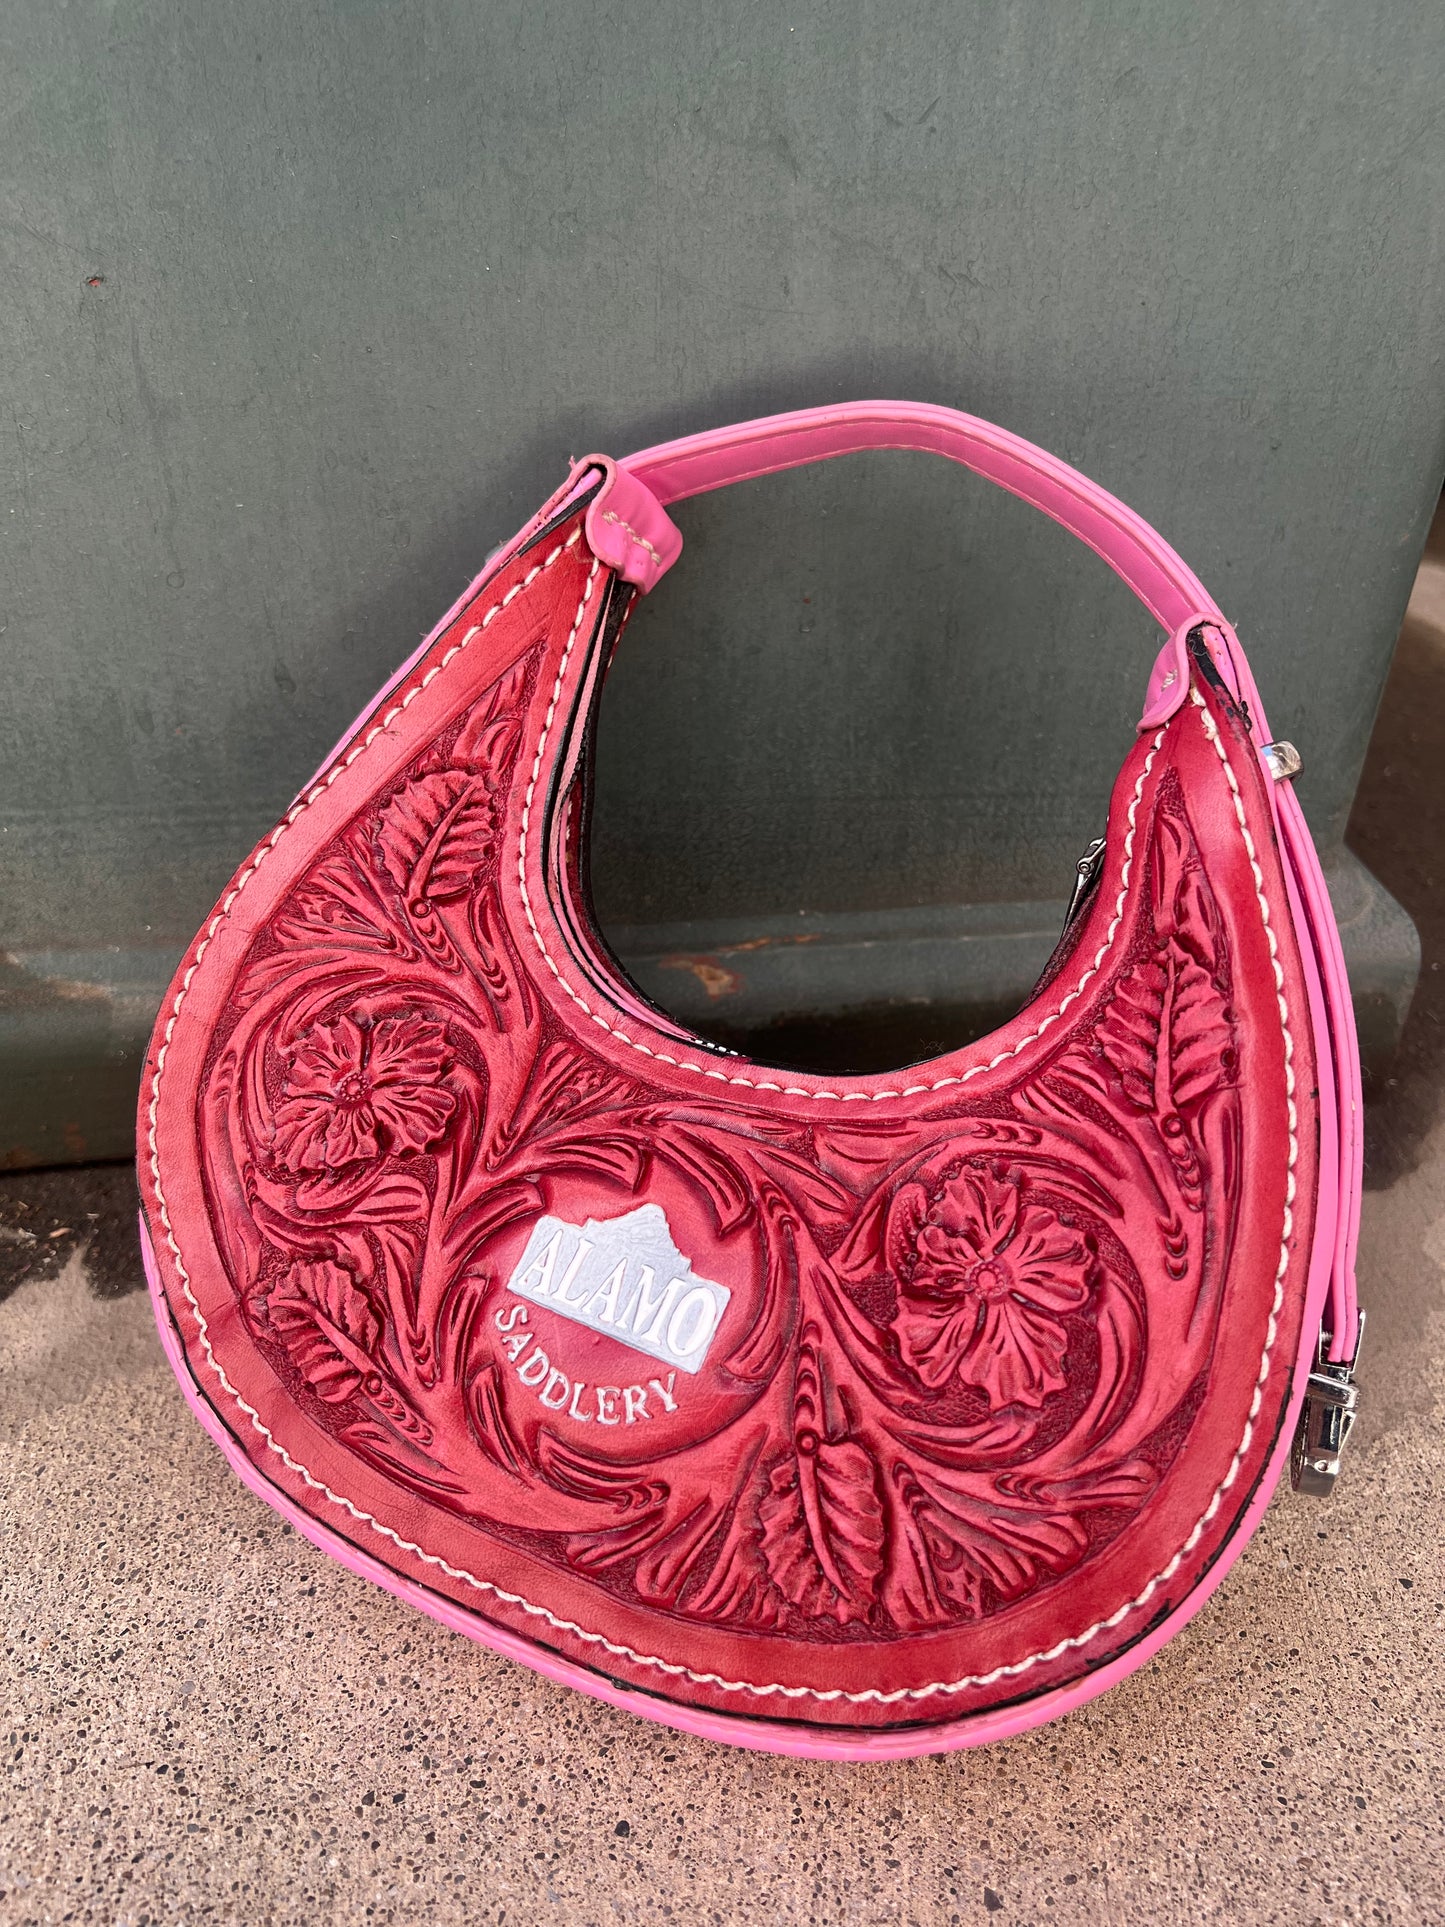 The Alamo Mini Handbag pink